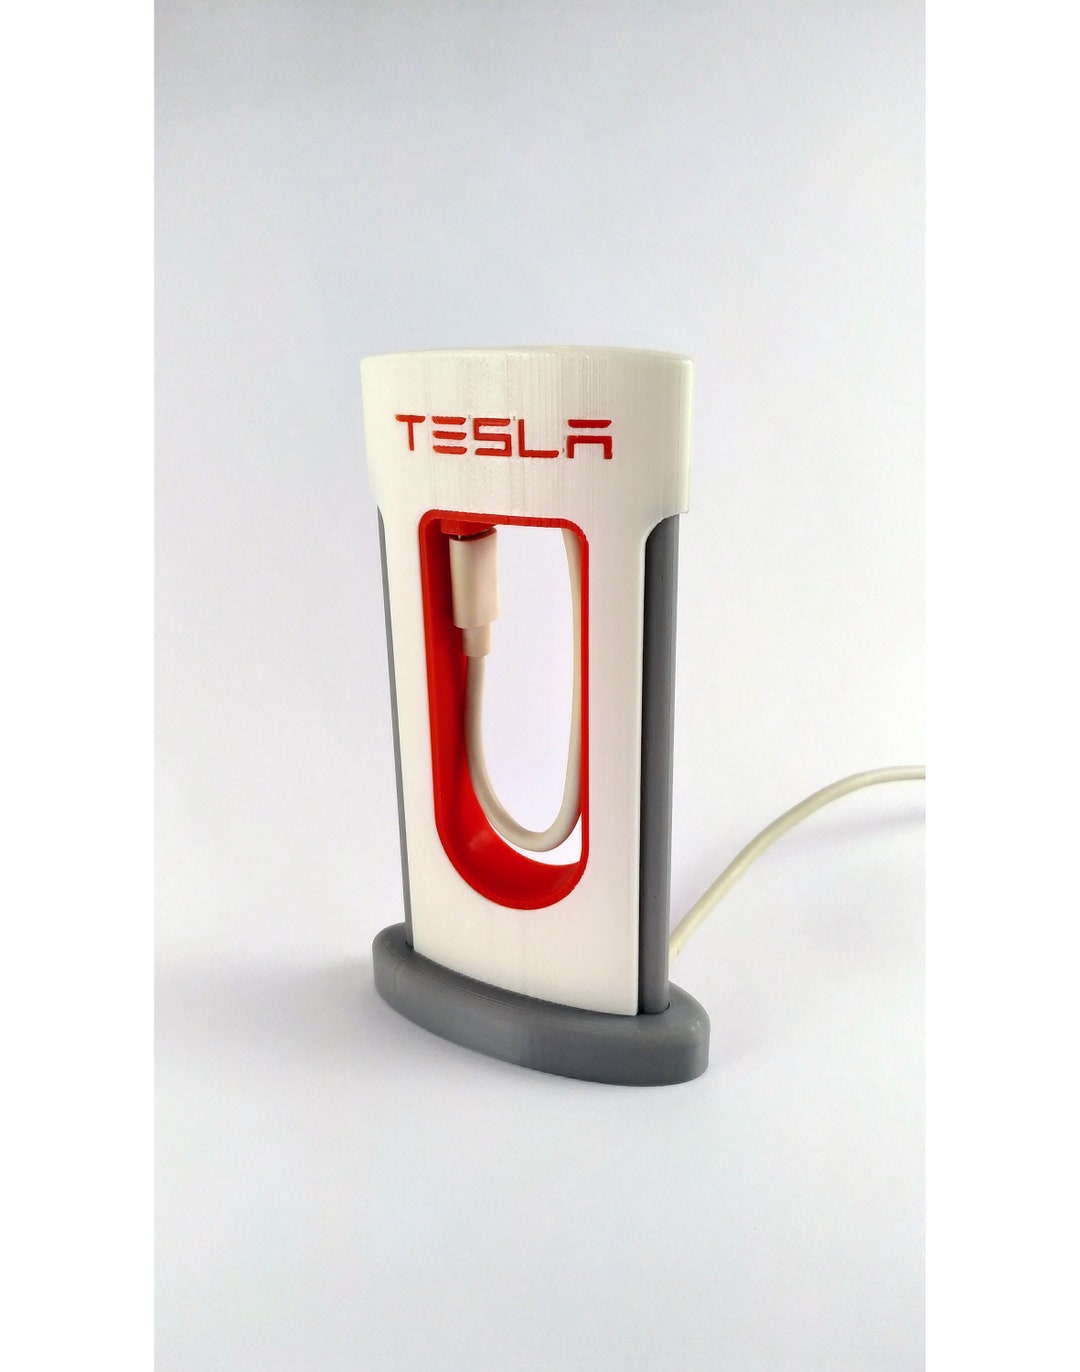 Tesla Supercharger Smartphone iPhone, Android & andere Geräte realistische  Ladegerät - .de